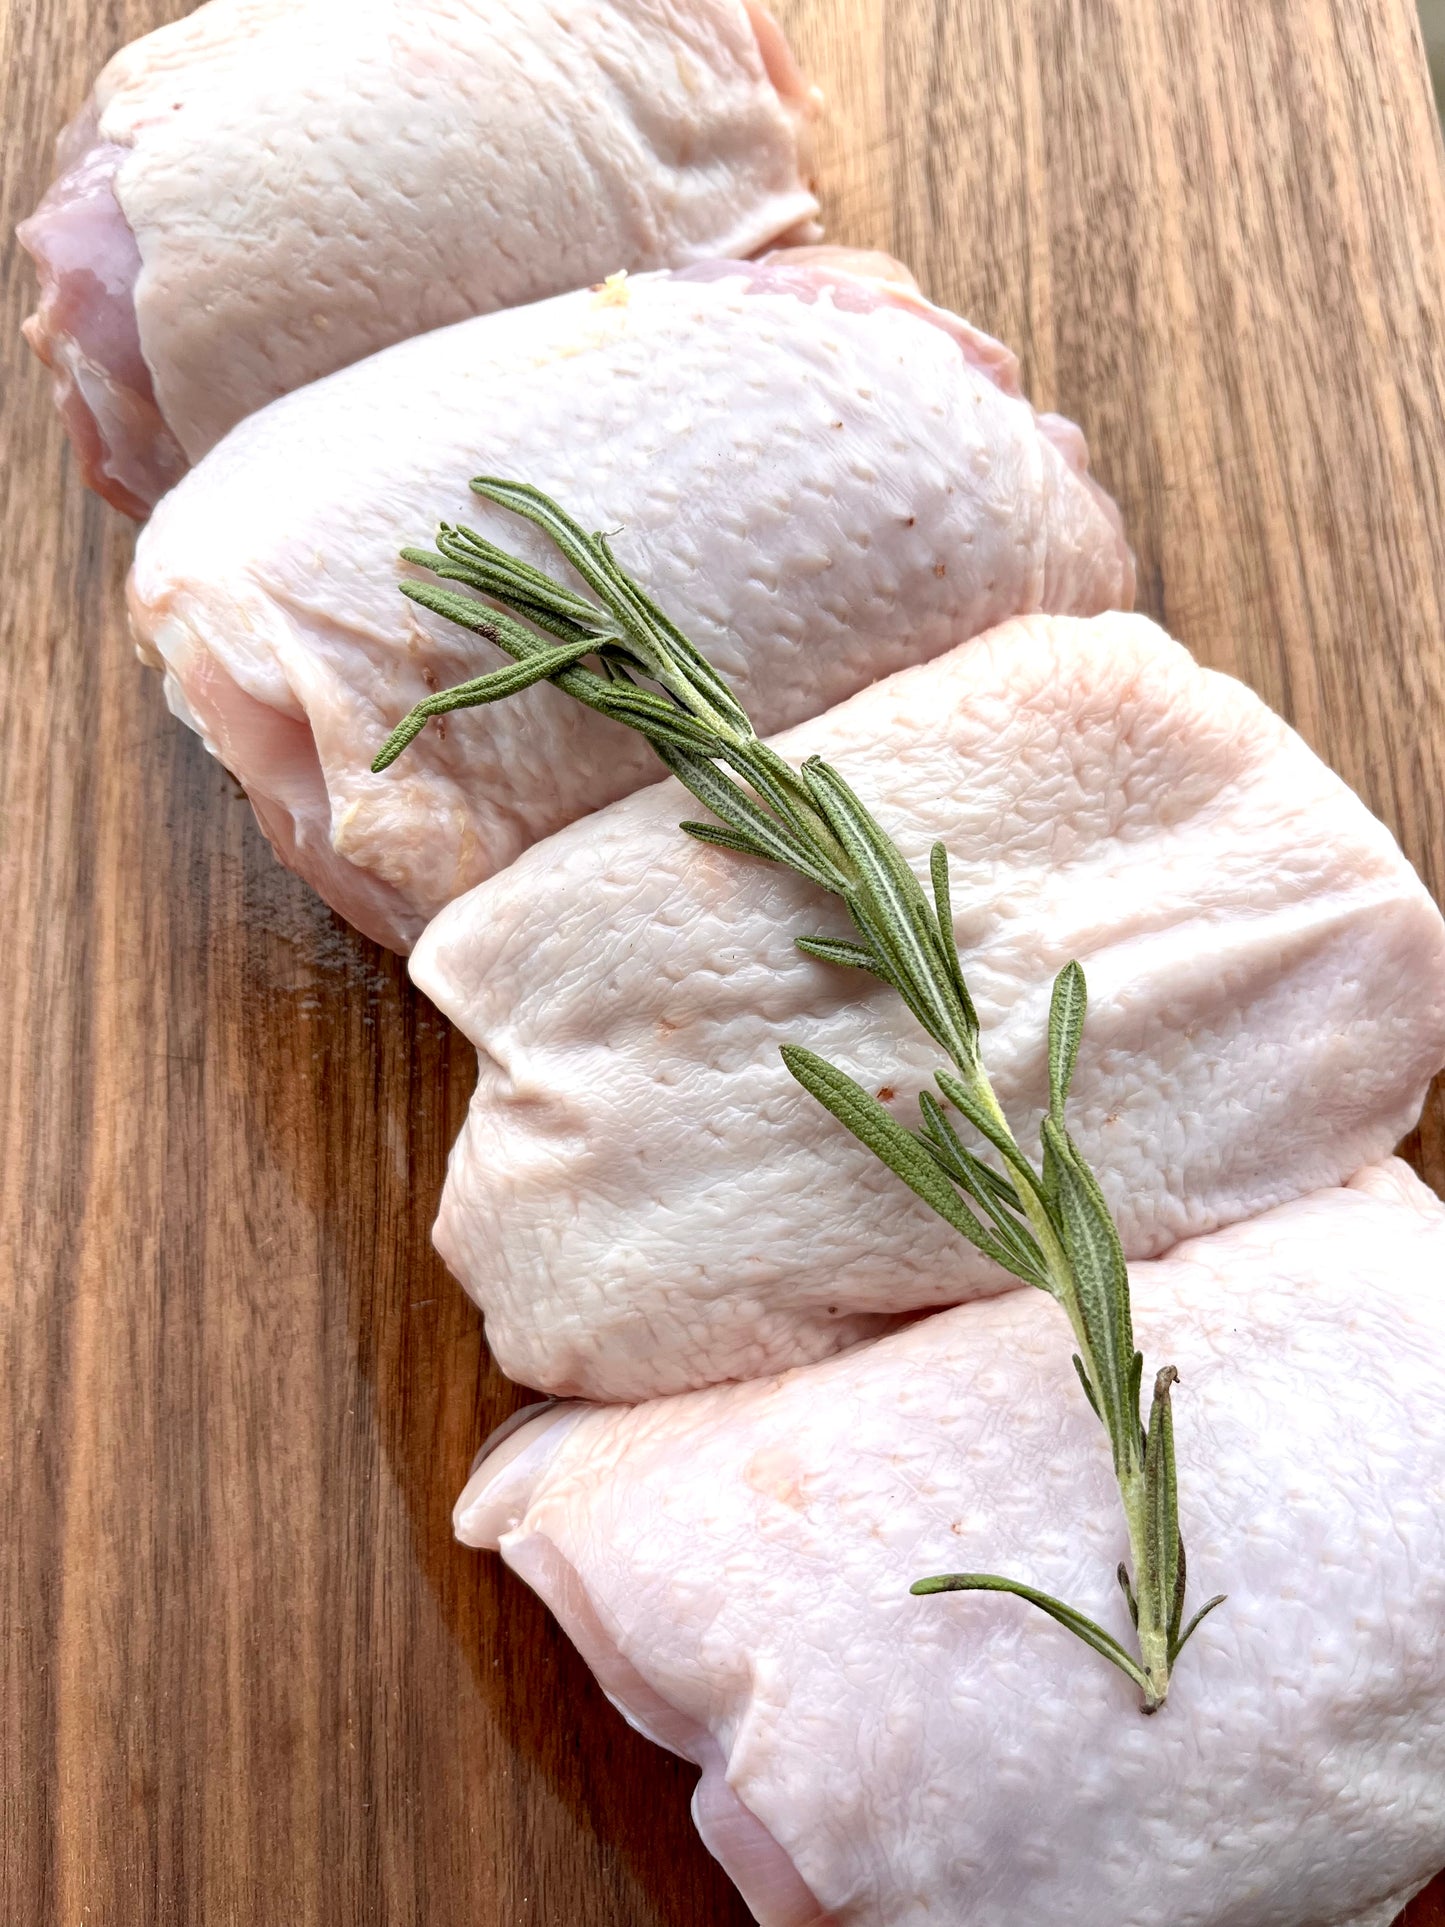 Bone-In Skin On Chicken Thighs